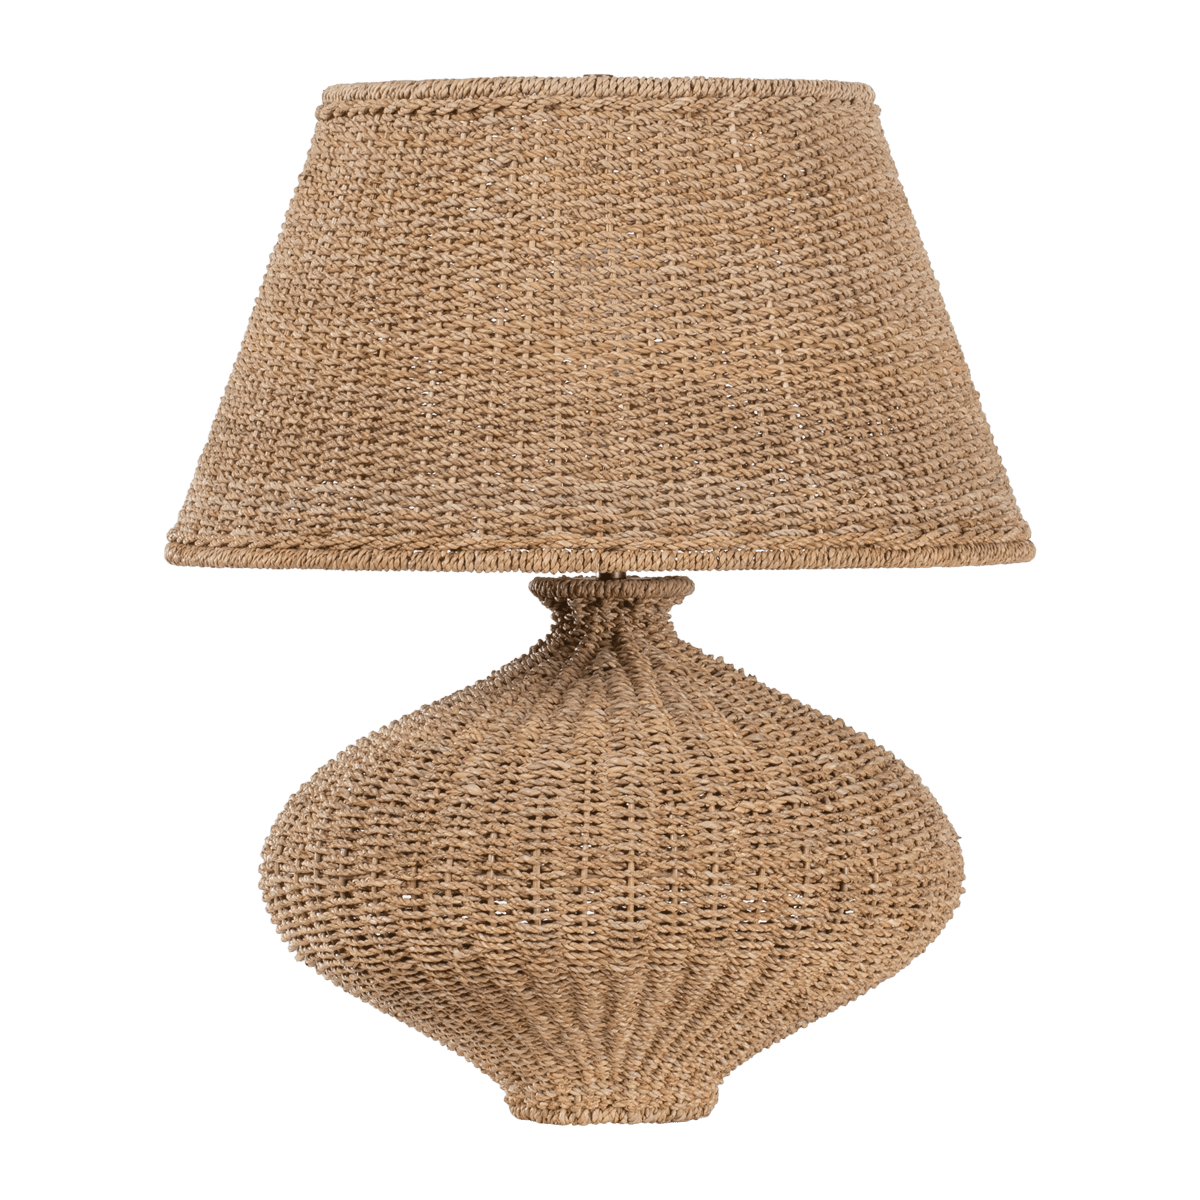 Hudson Valley Nette Table Lamp Table lamp